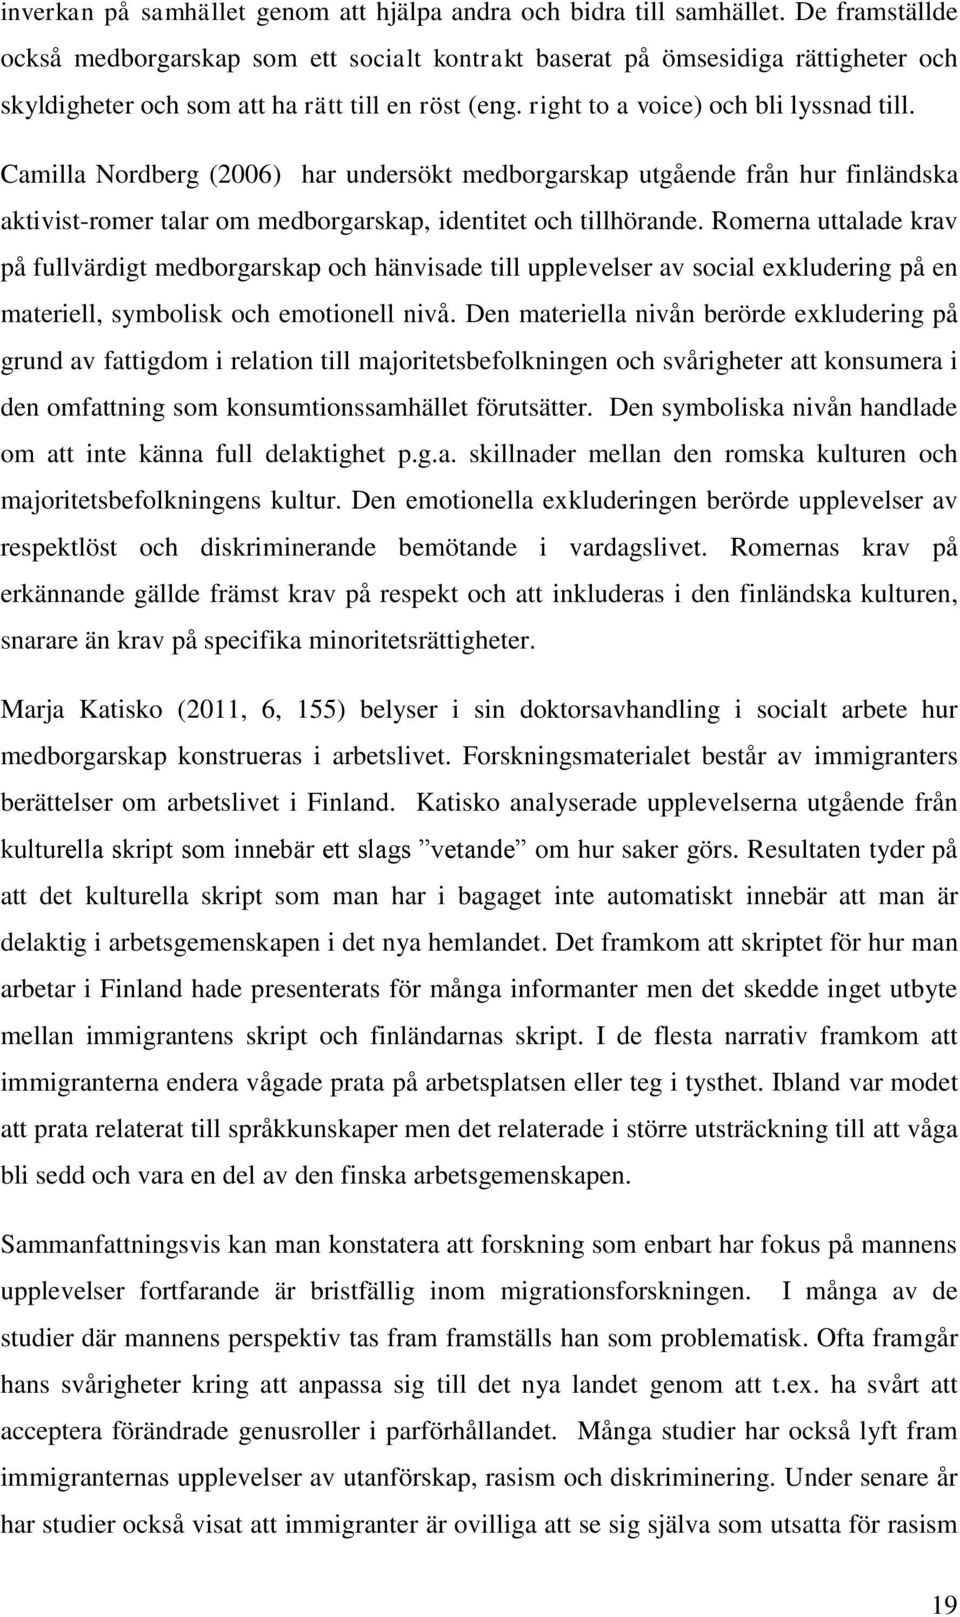 Camilla Nordberg (2006) har undersökt medborgarskap utgående från hur finländska aktivist-romer talar om medborgarskap, identitet och tillhörande.